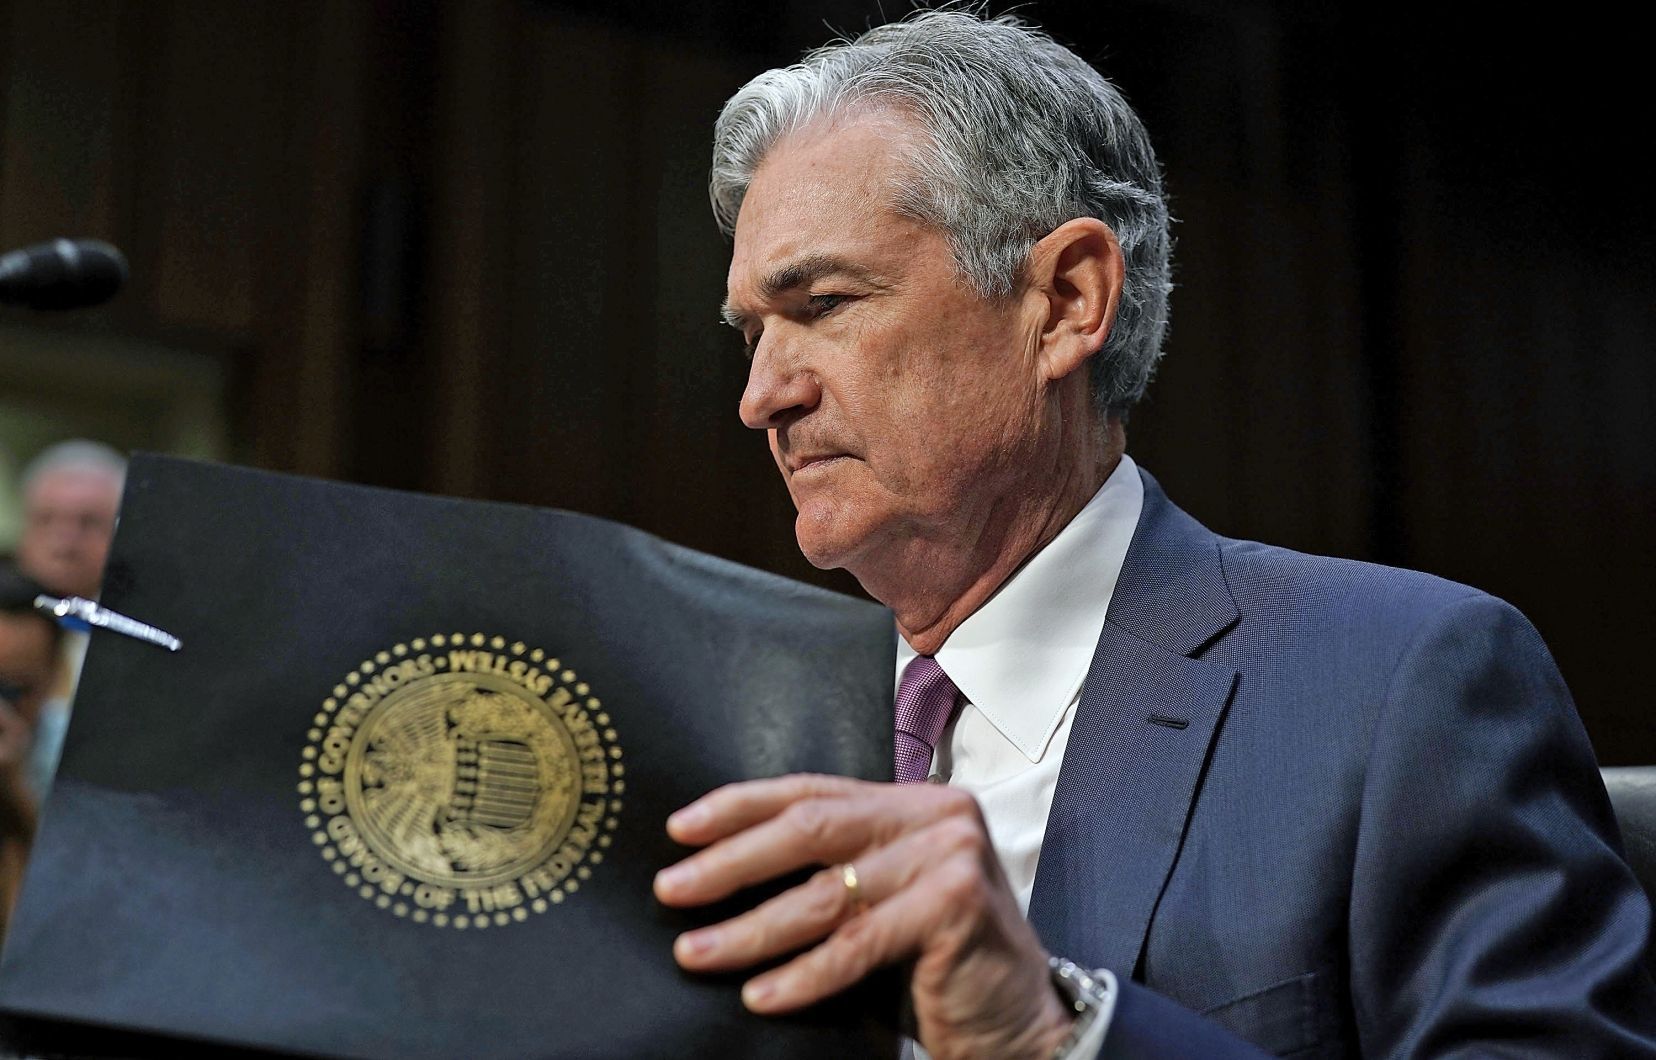 Fed chairman Jay Powell